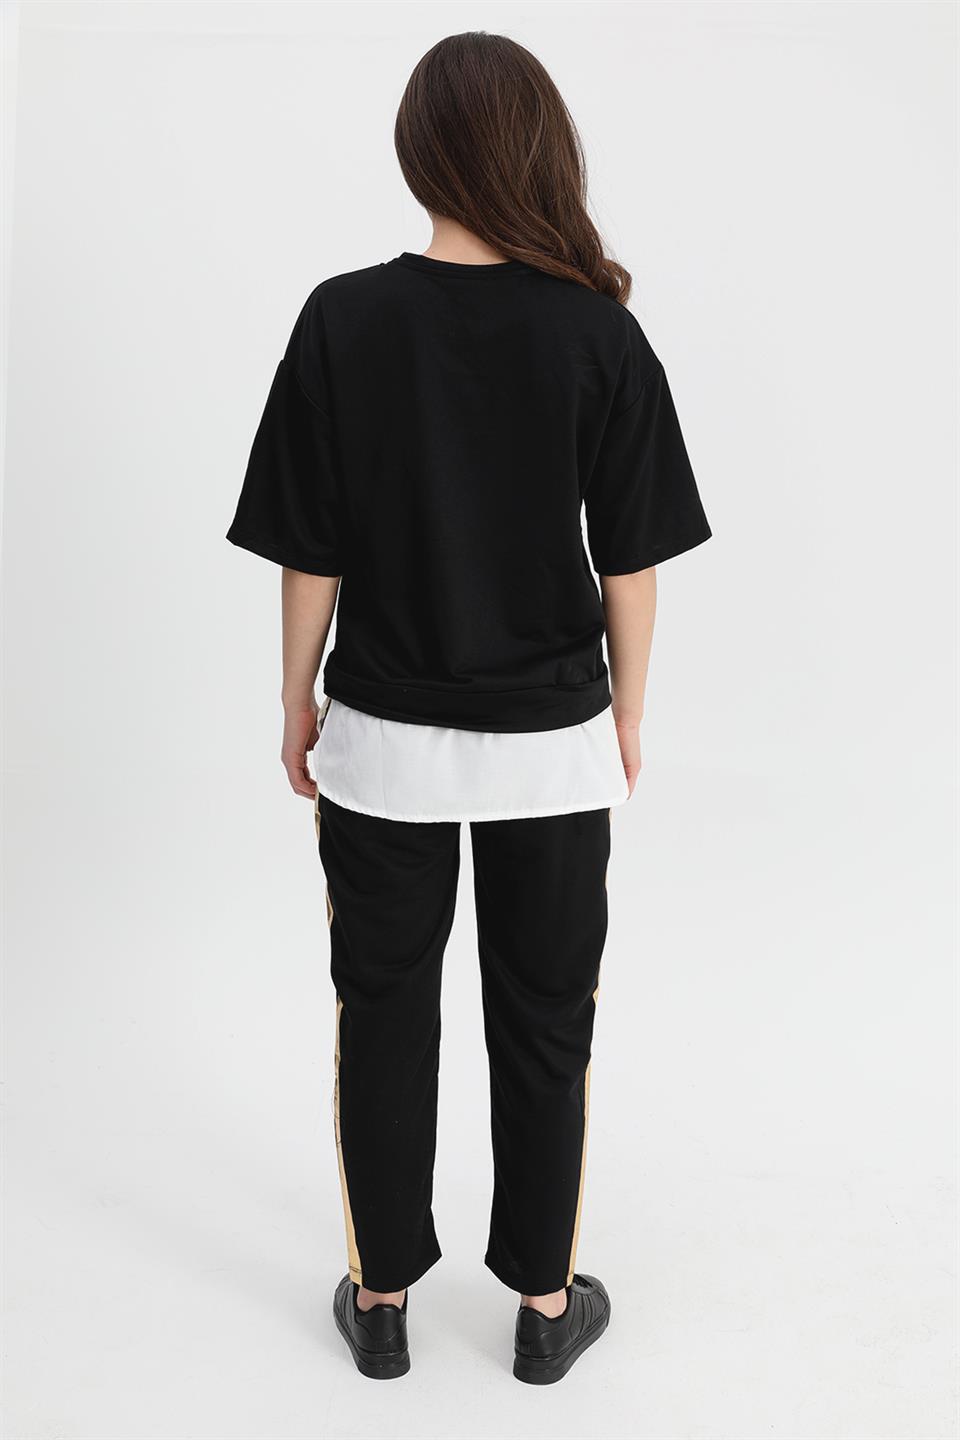 Women's Suit Skirt Grass Bird Printed Elastic Waist T-shirt Trousers - Black - STREETMODE™